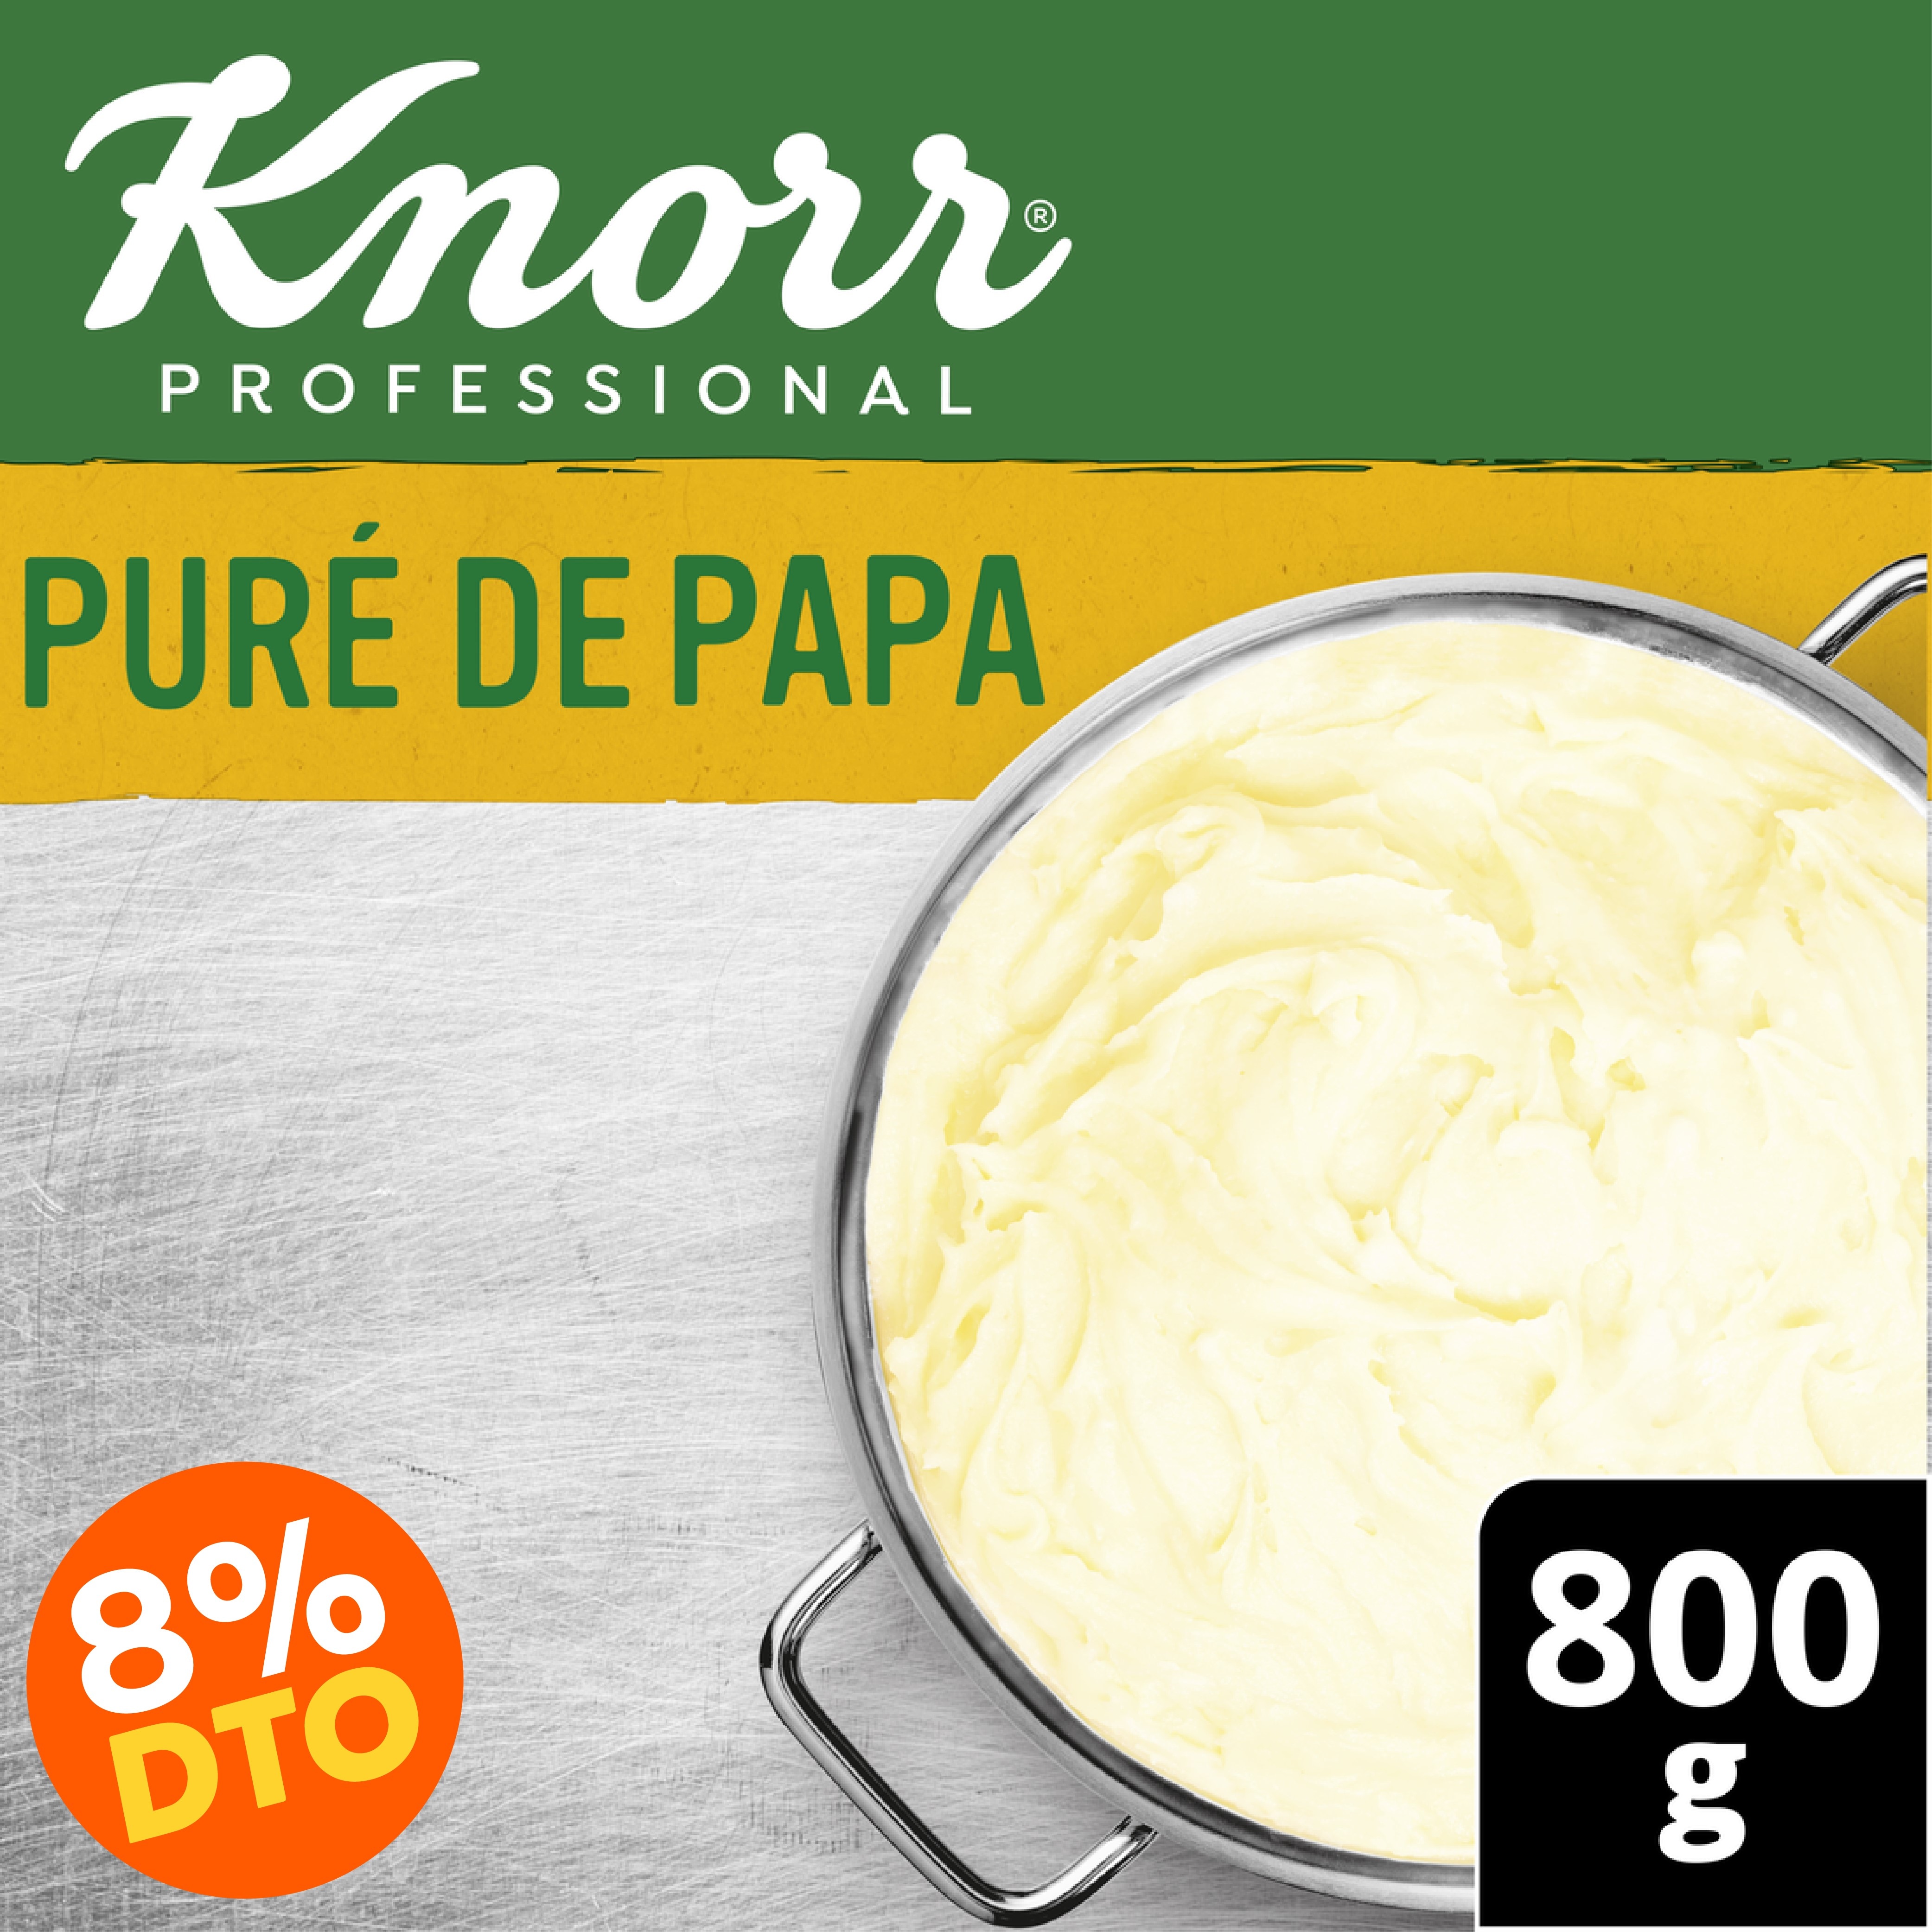 Knorr® Professional Puré de Papa modo de empleo y recetas